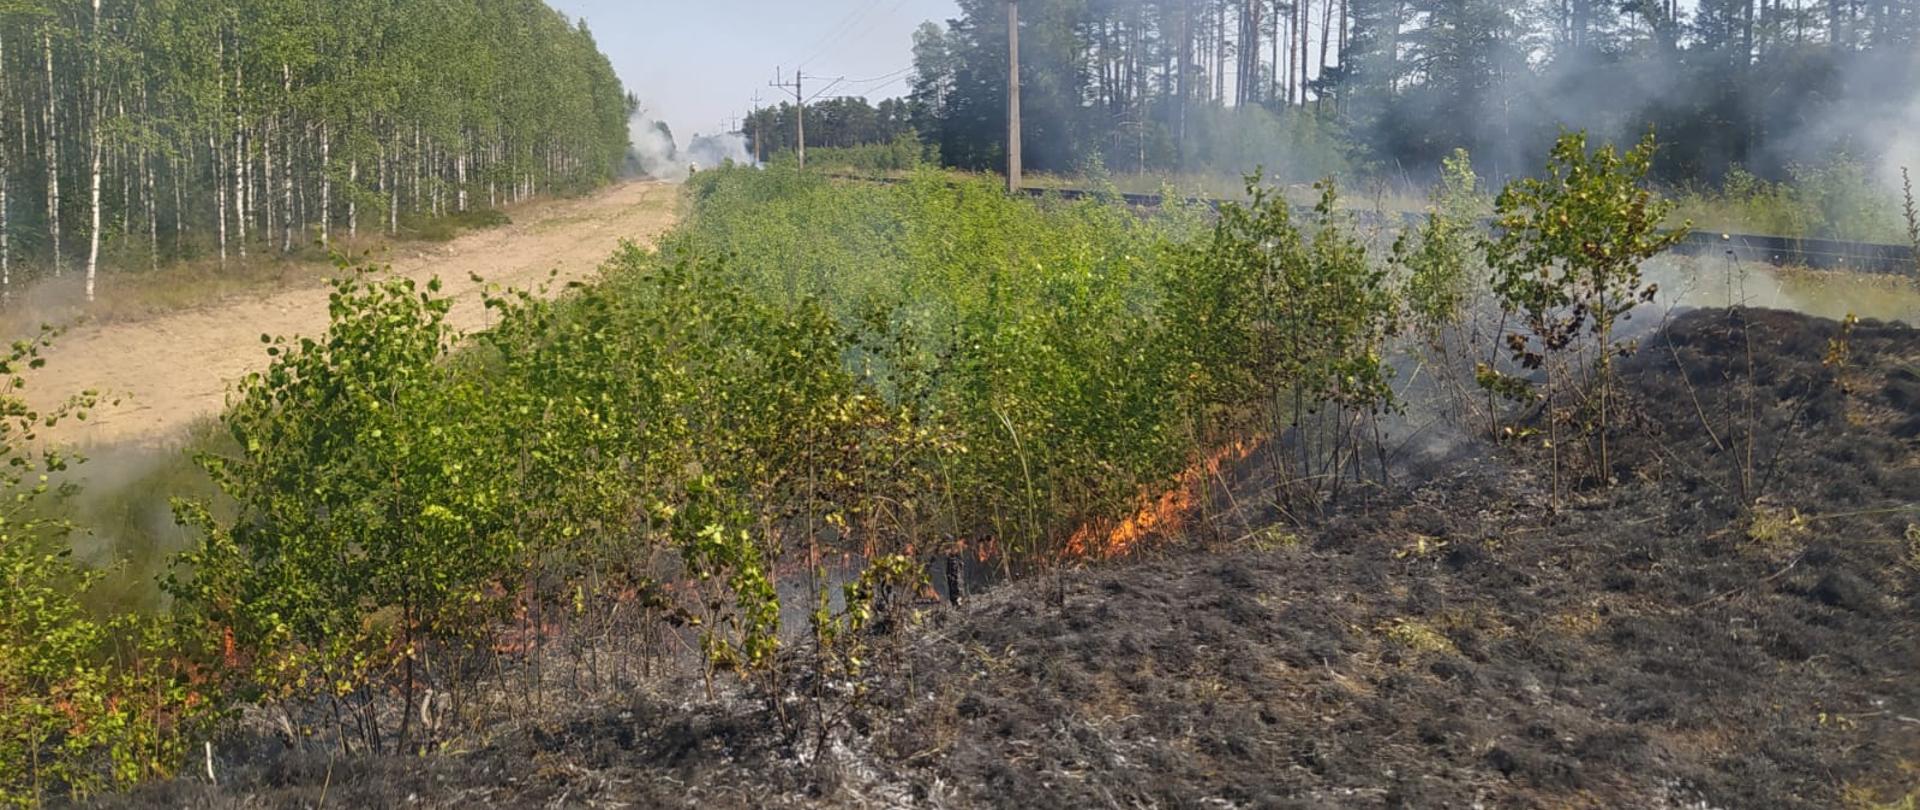 Spalona ziemia widoczne płomienie ,które spalają zielona roślinność